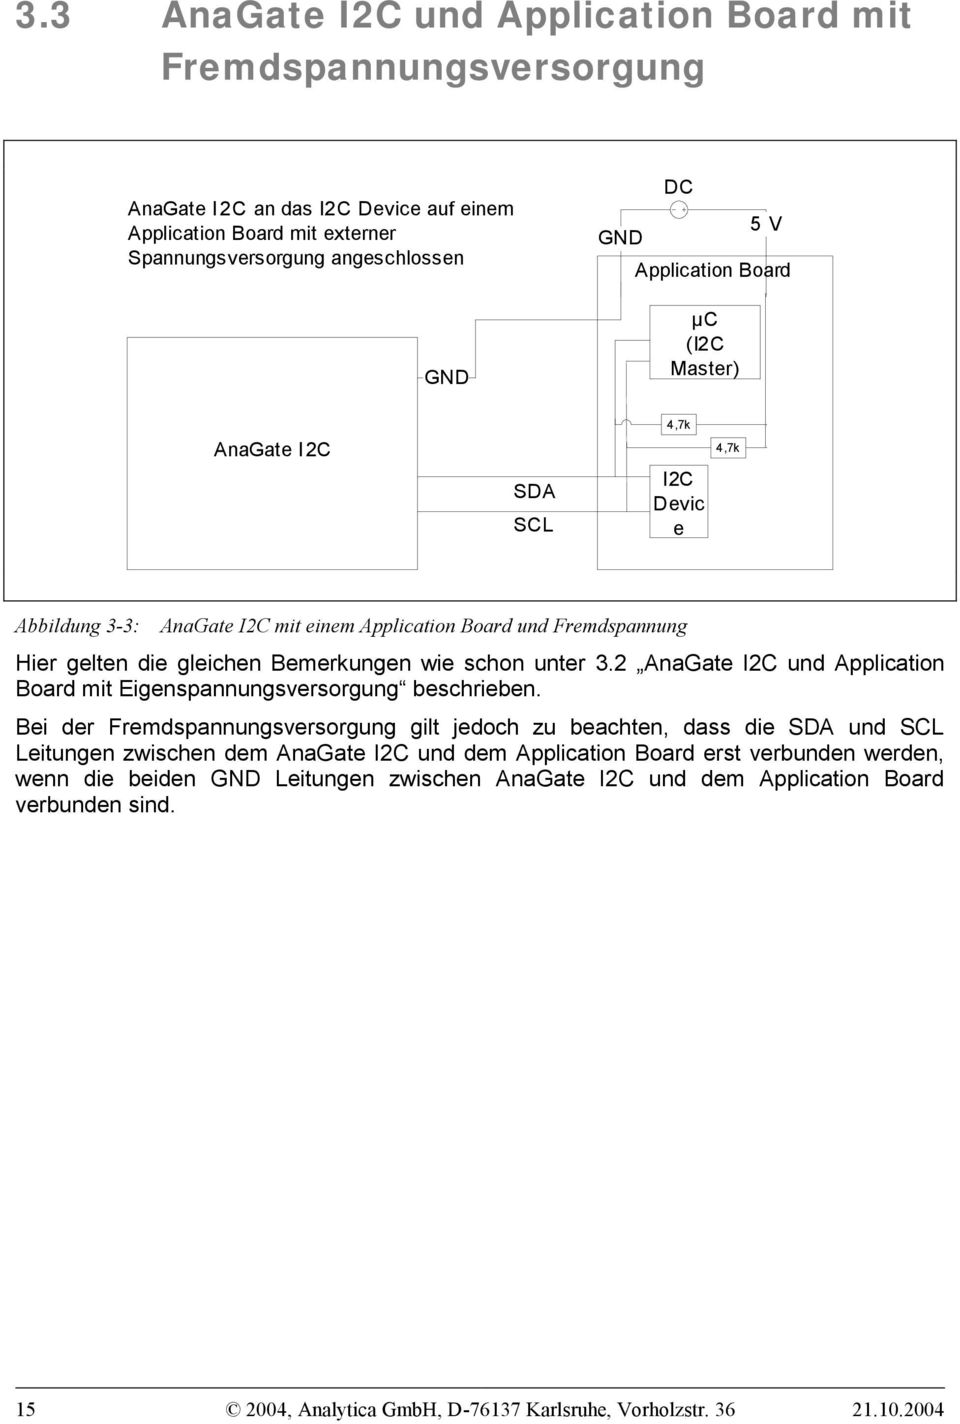 2 AnaGate I2C und Application Board mit Eigenspannungsversorgung beschrieben.